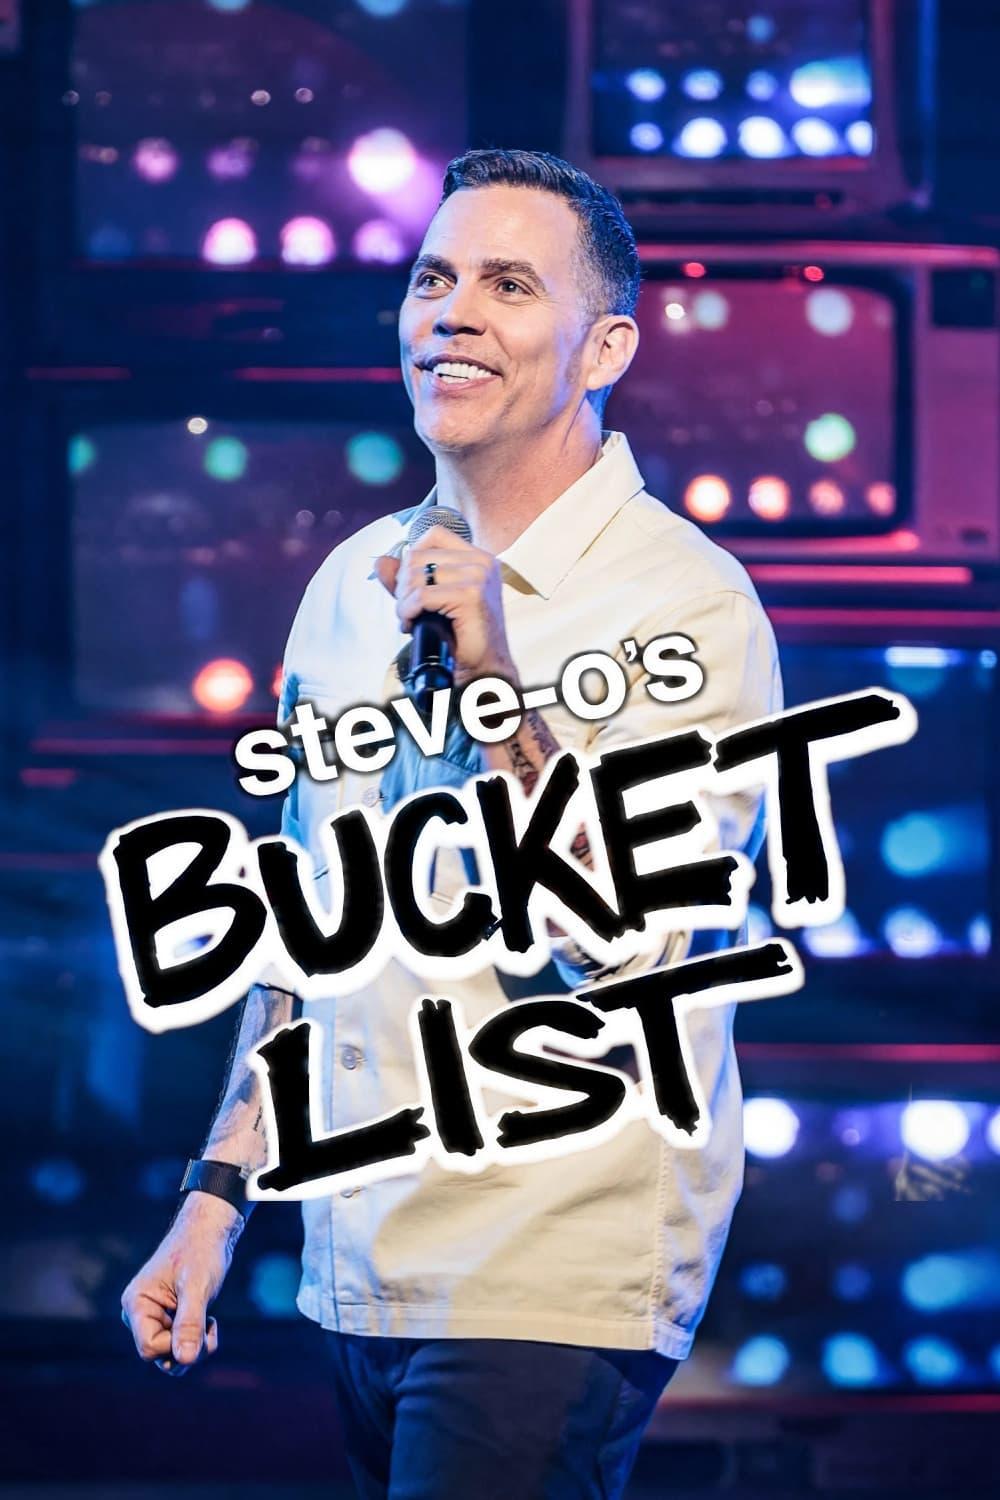 Steve-O's Bucket List poster